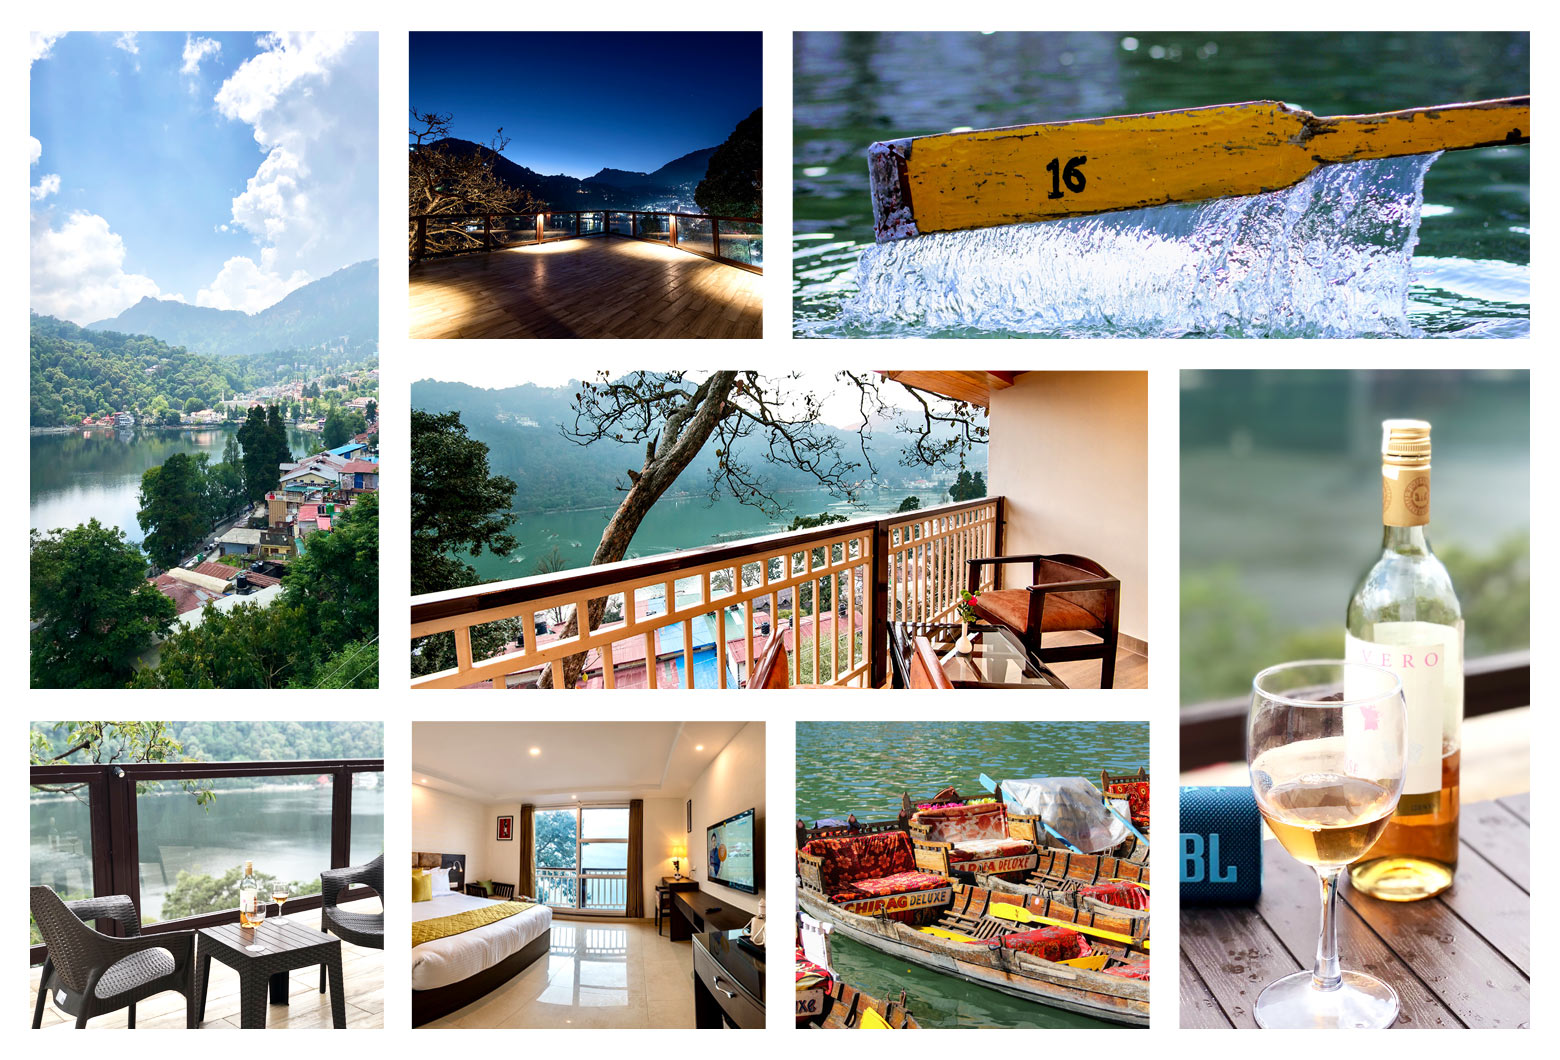 Experience the serenity of Nainital